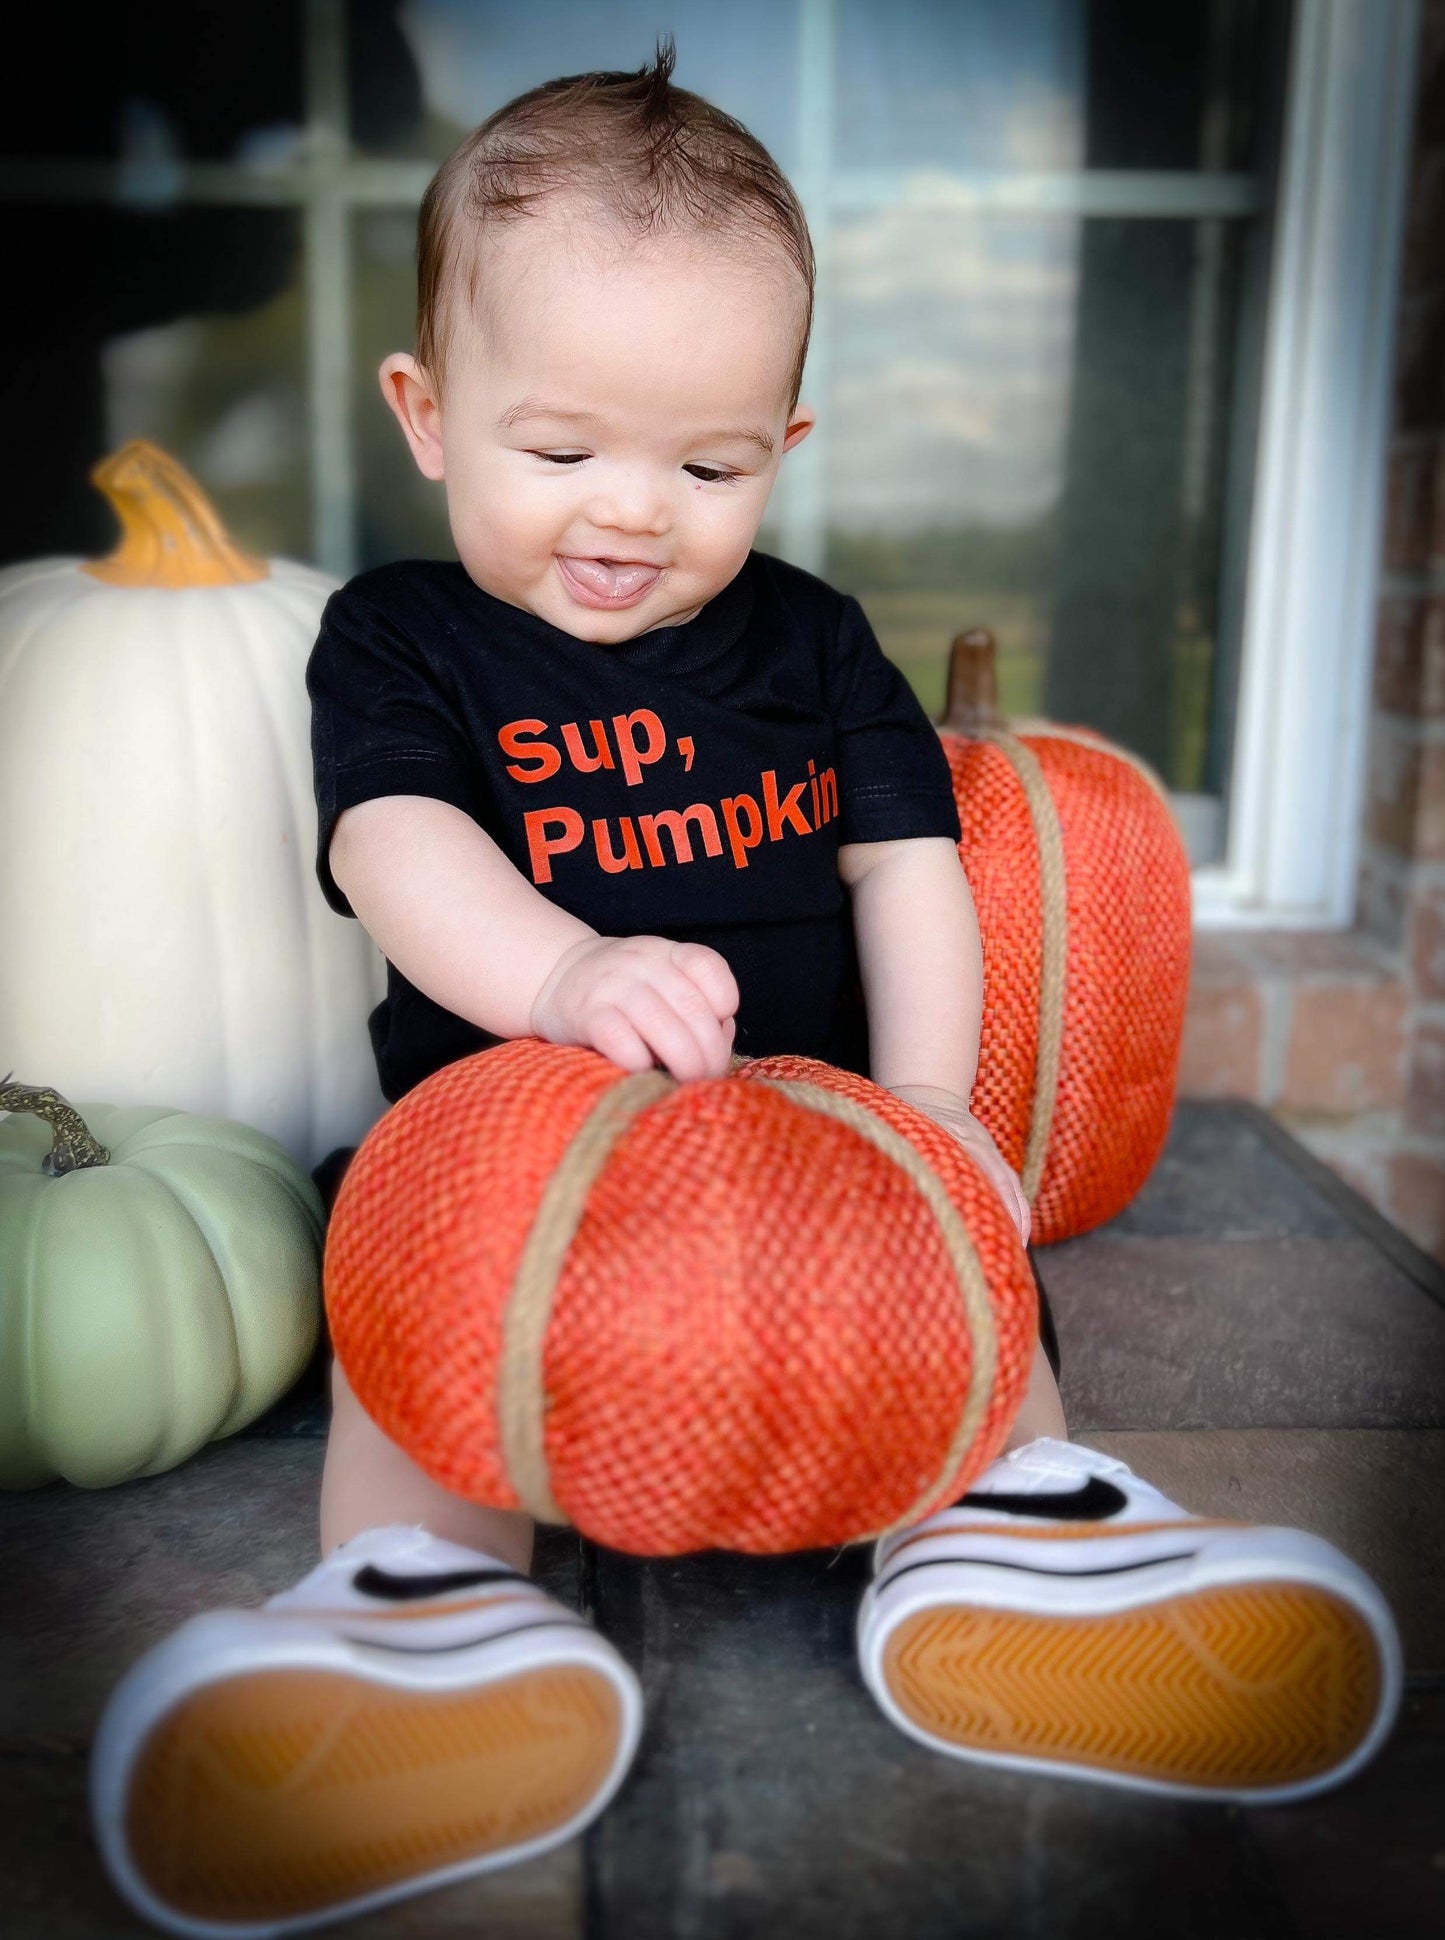 Sup pumpkin( black shirt only)